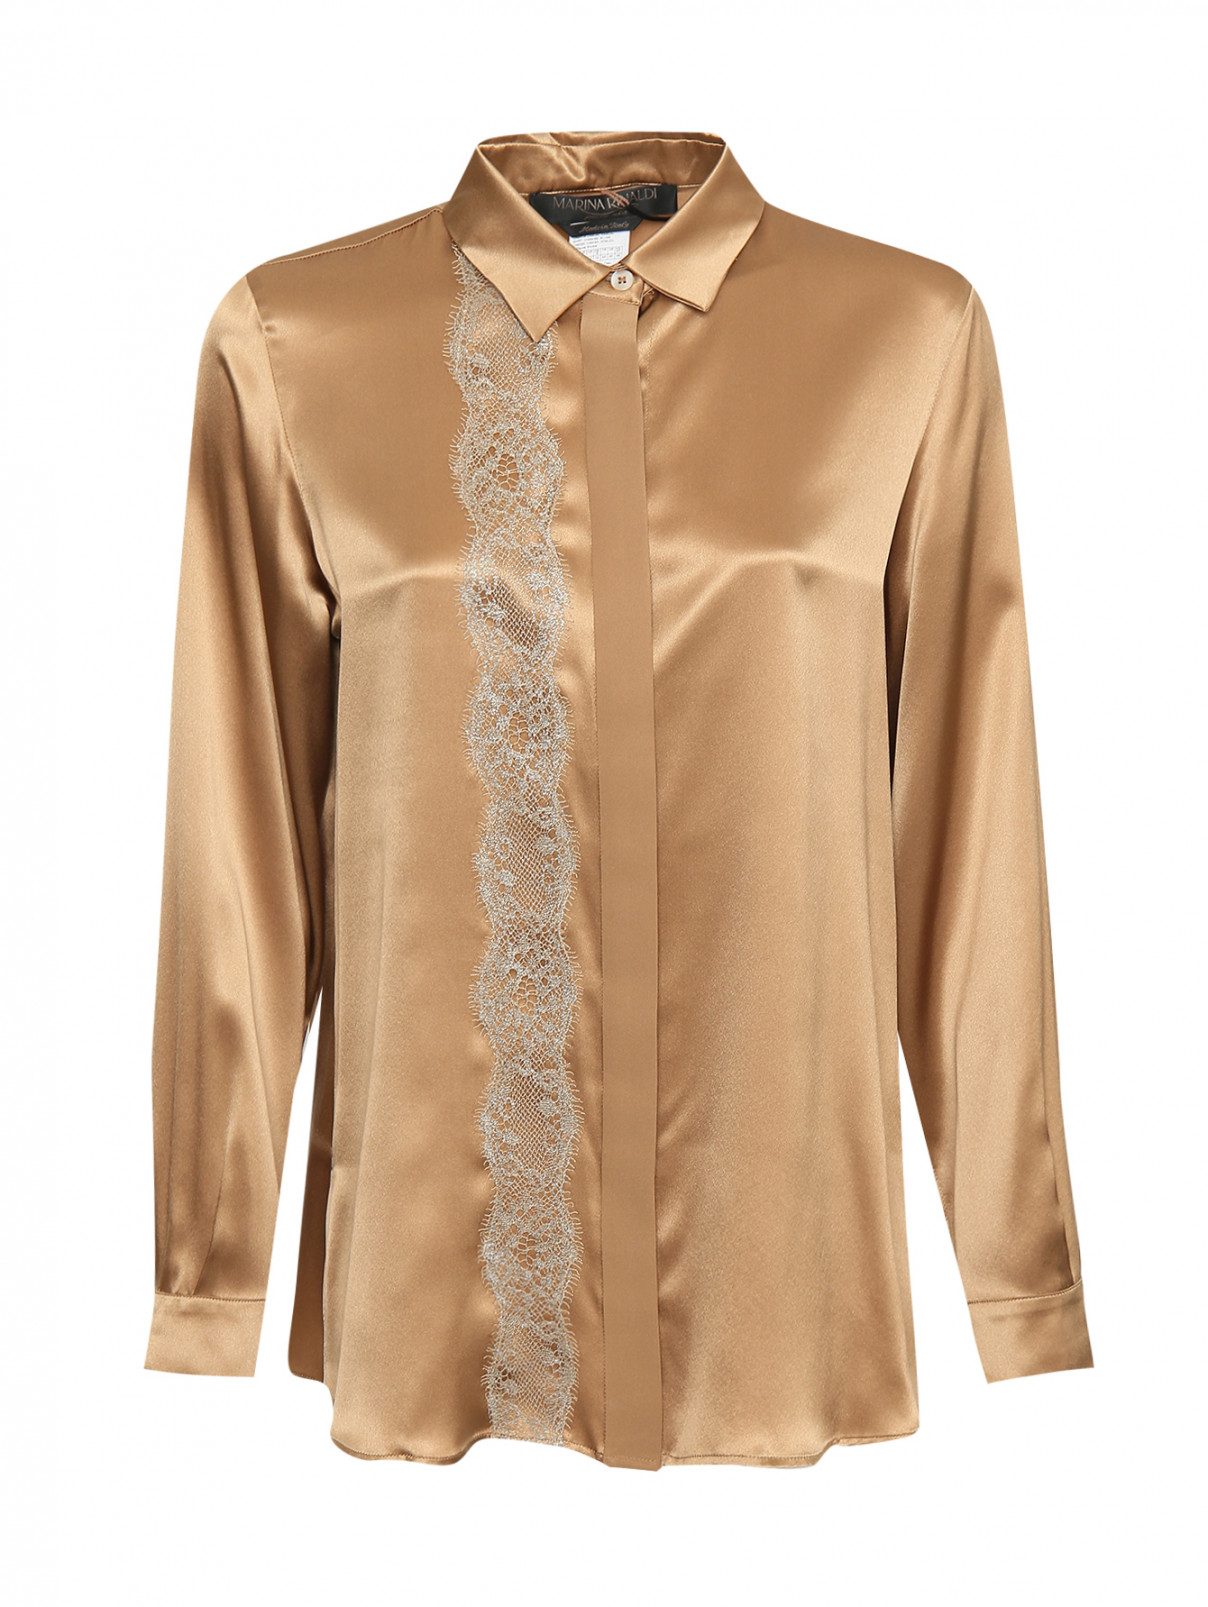 Блуза из шелка с кружевом Marina Rinaldi  –  Общий вид  – Цвет:  Бежевый